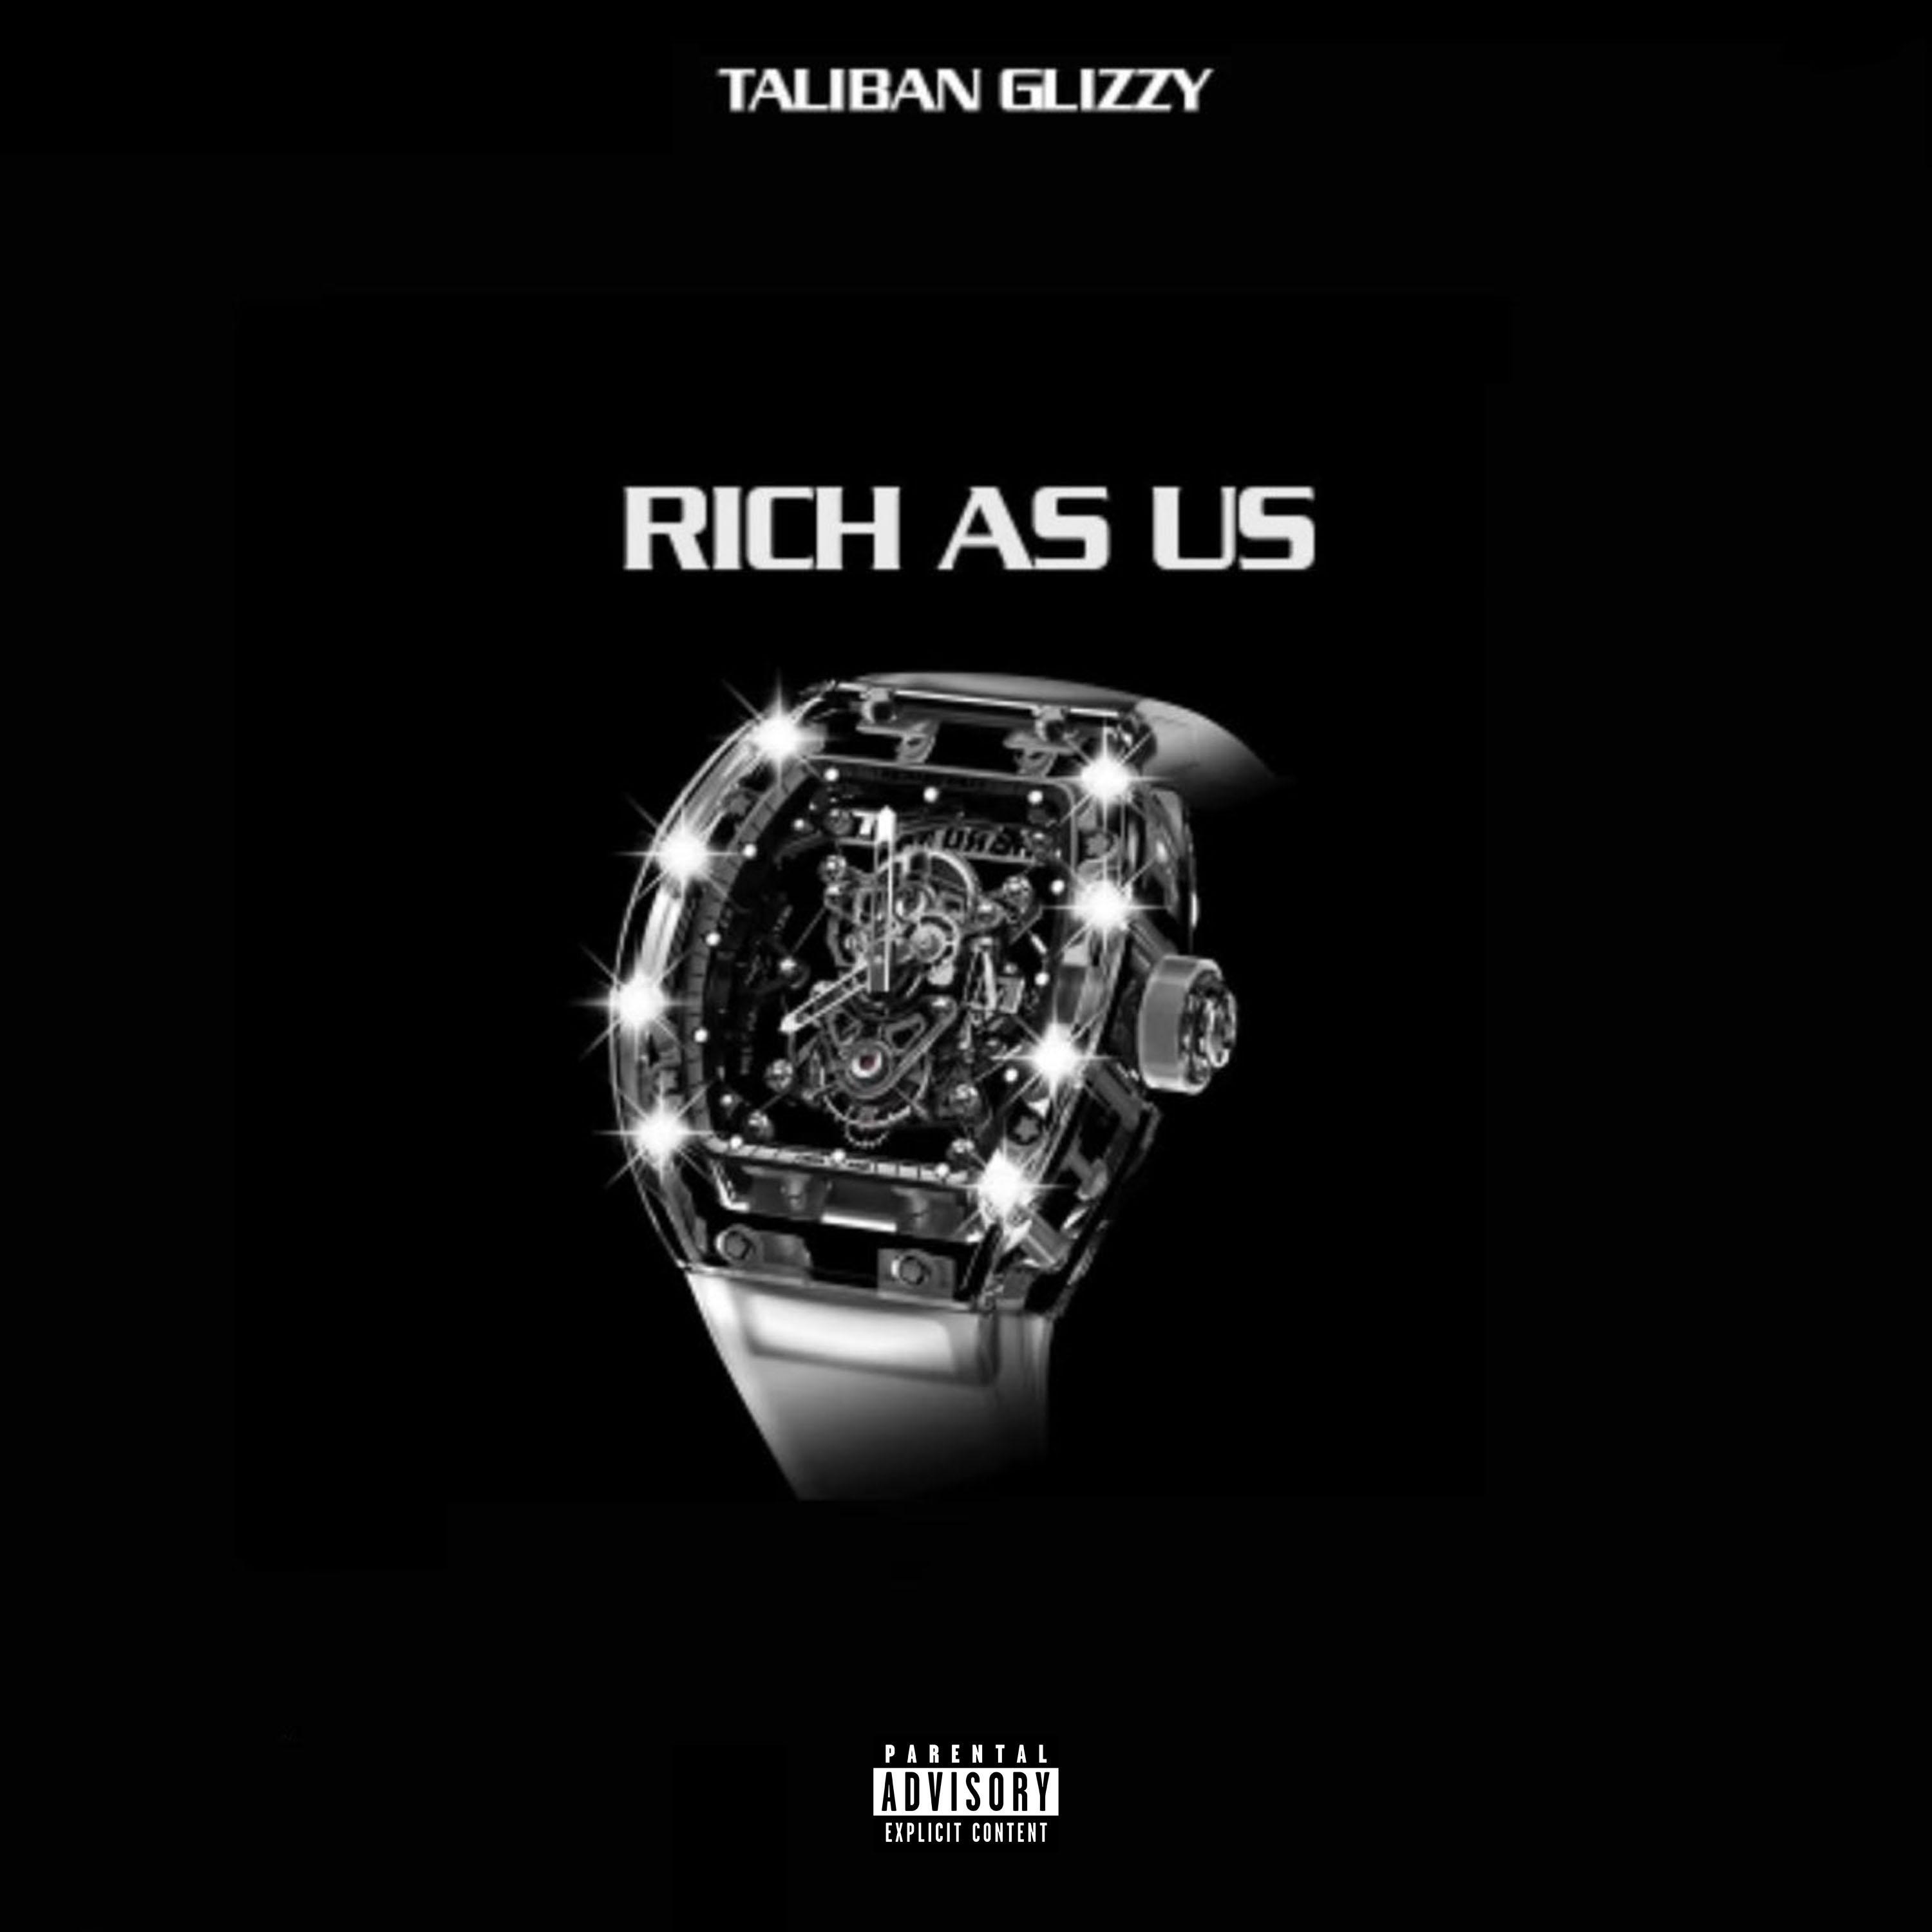 Taliban Glizzy - Rich As Us